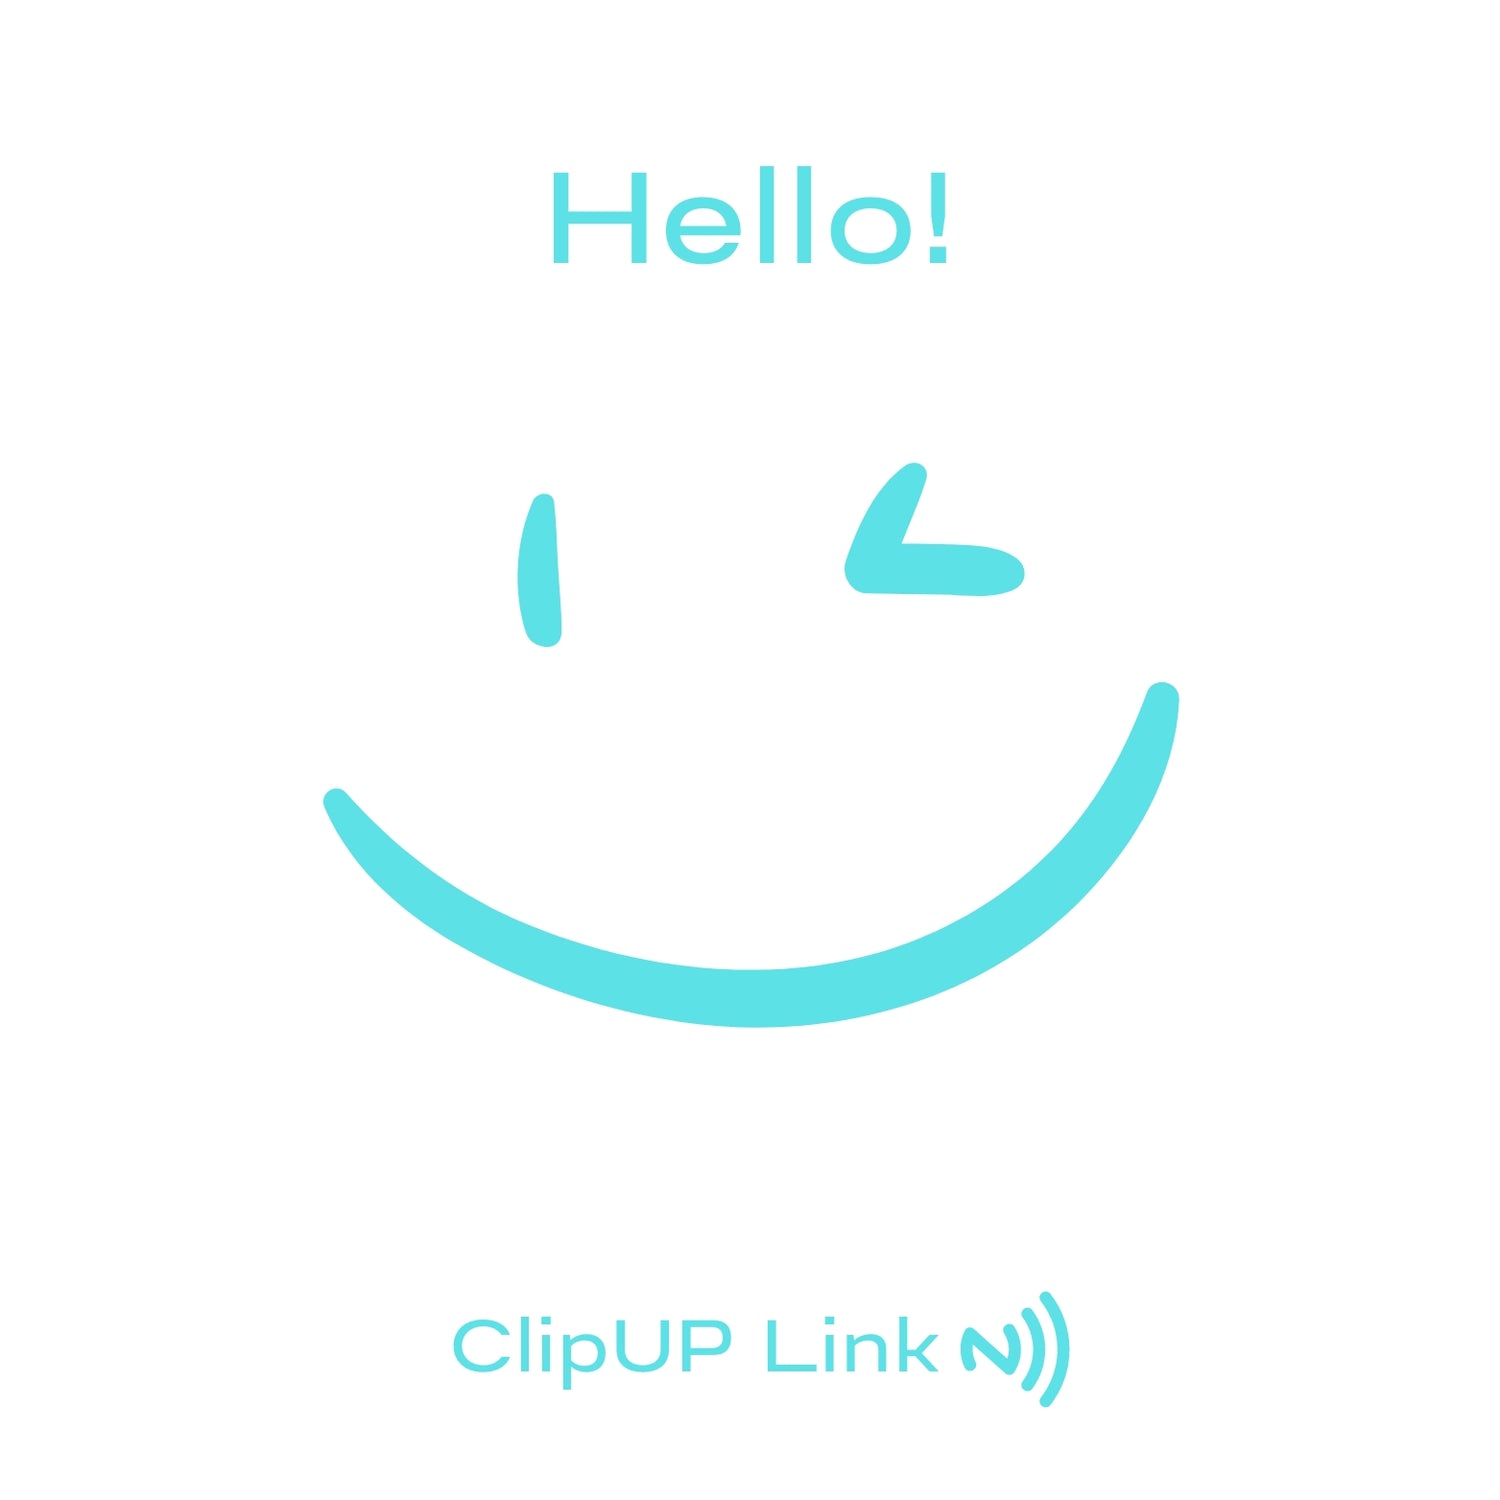 ClipUp Link N))